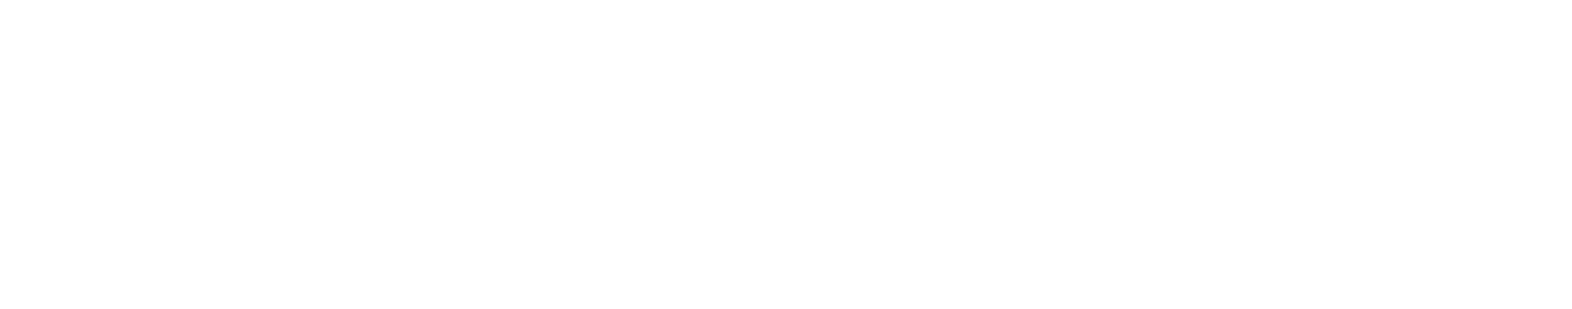 Net One Systems Logo groß für dunkle Hintergründe (transparentes PNG)